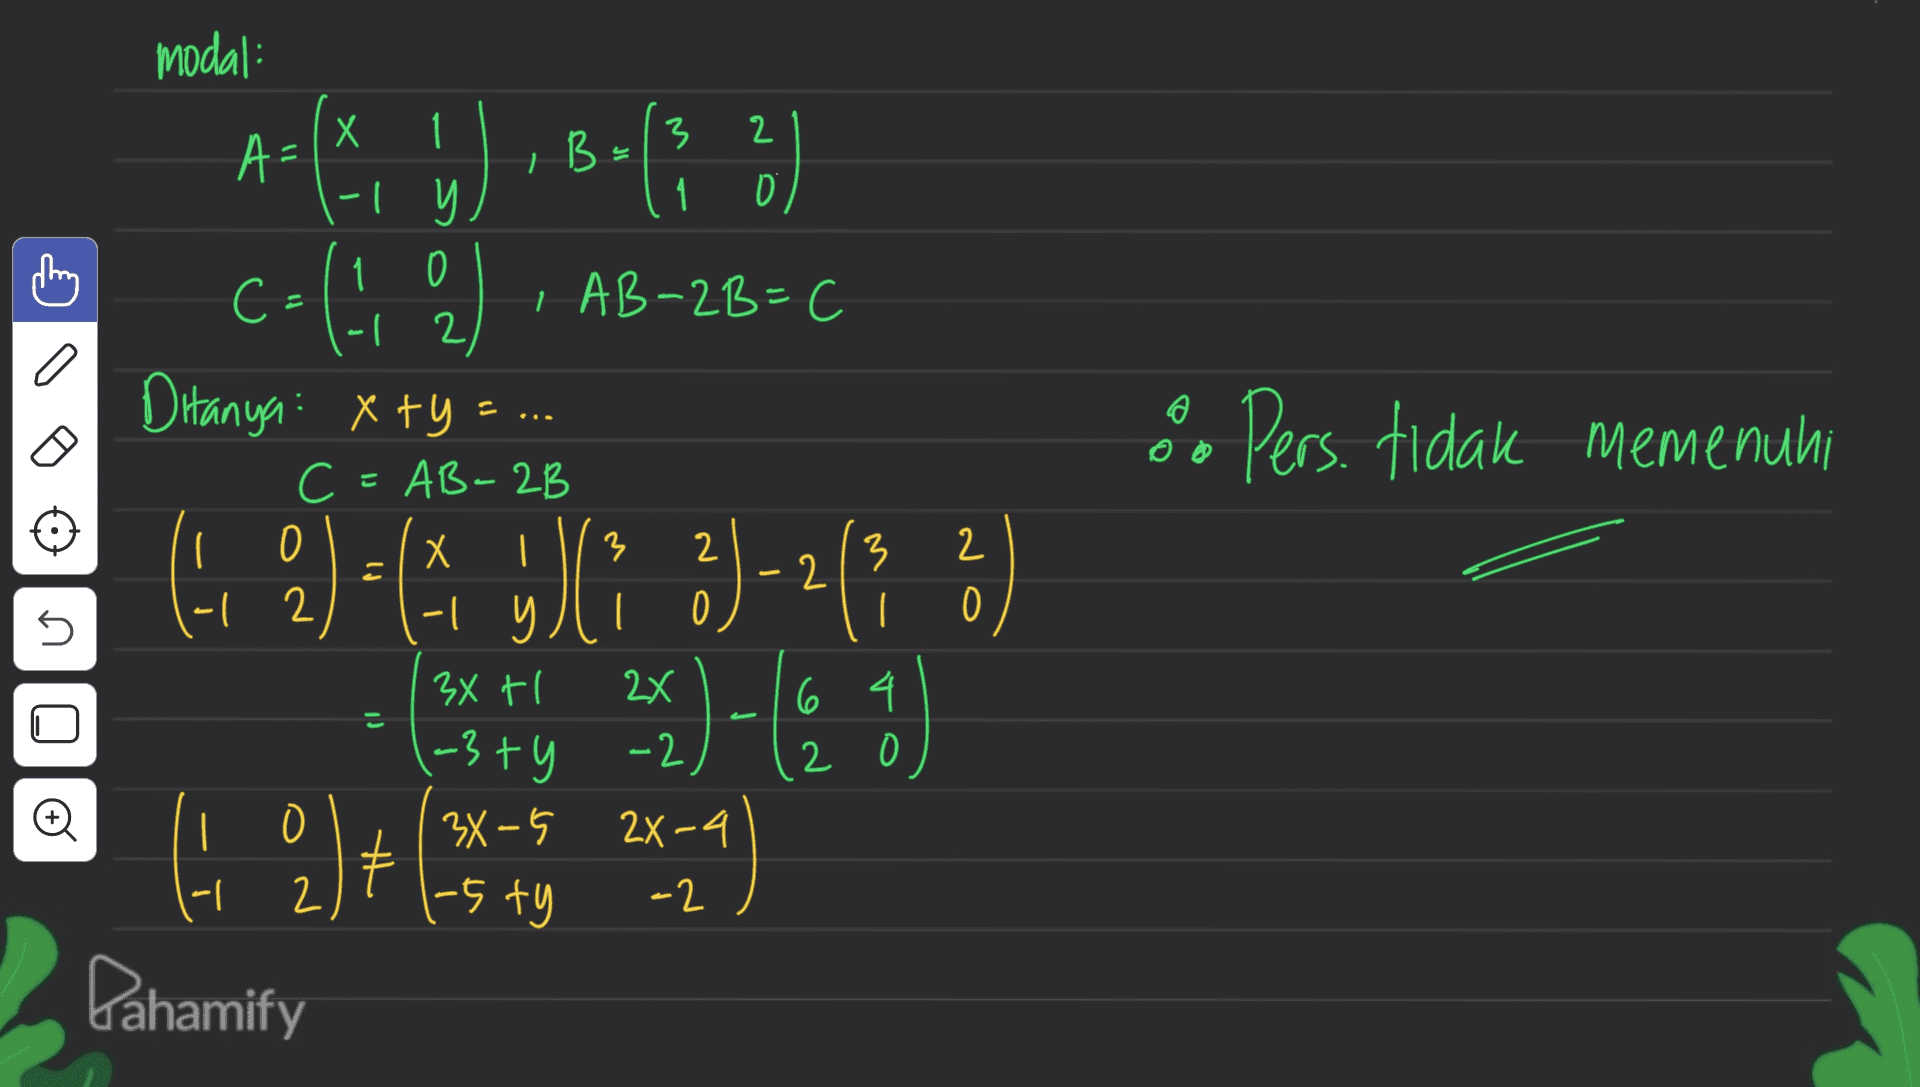 B = C- a o Pers. tidak memenuhi modal: Х 1 3 2 A= -1 y 1 ☺ 1 0 С I AB-2B=C (-1 2 2 Ditanya: xty C=AB-2B 0 Х I 3 -| -| 0 34 tl 6 4 (-3 ty , | 34-5 2X-4 2 1-5 ty -2 Dahamify 3 2 O 5 ( 2 ) = (x ) 2) - 2 (3 ² yli 2x) - (0 g 쩰 는 2 © 